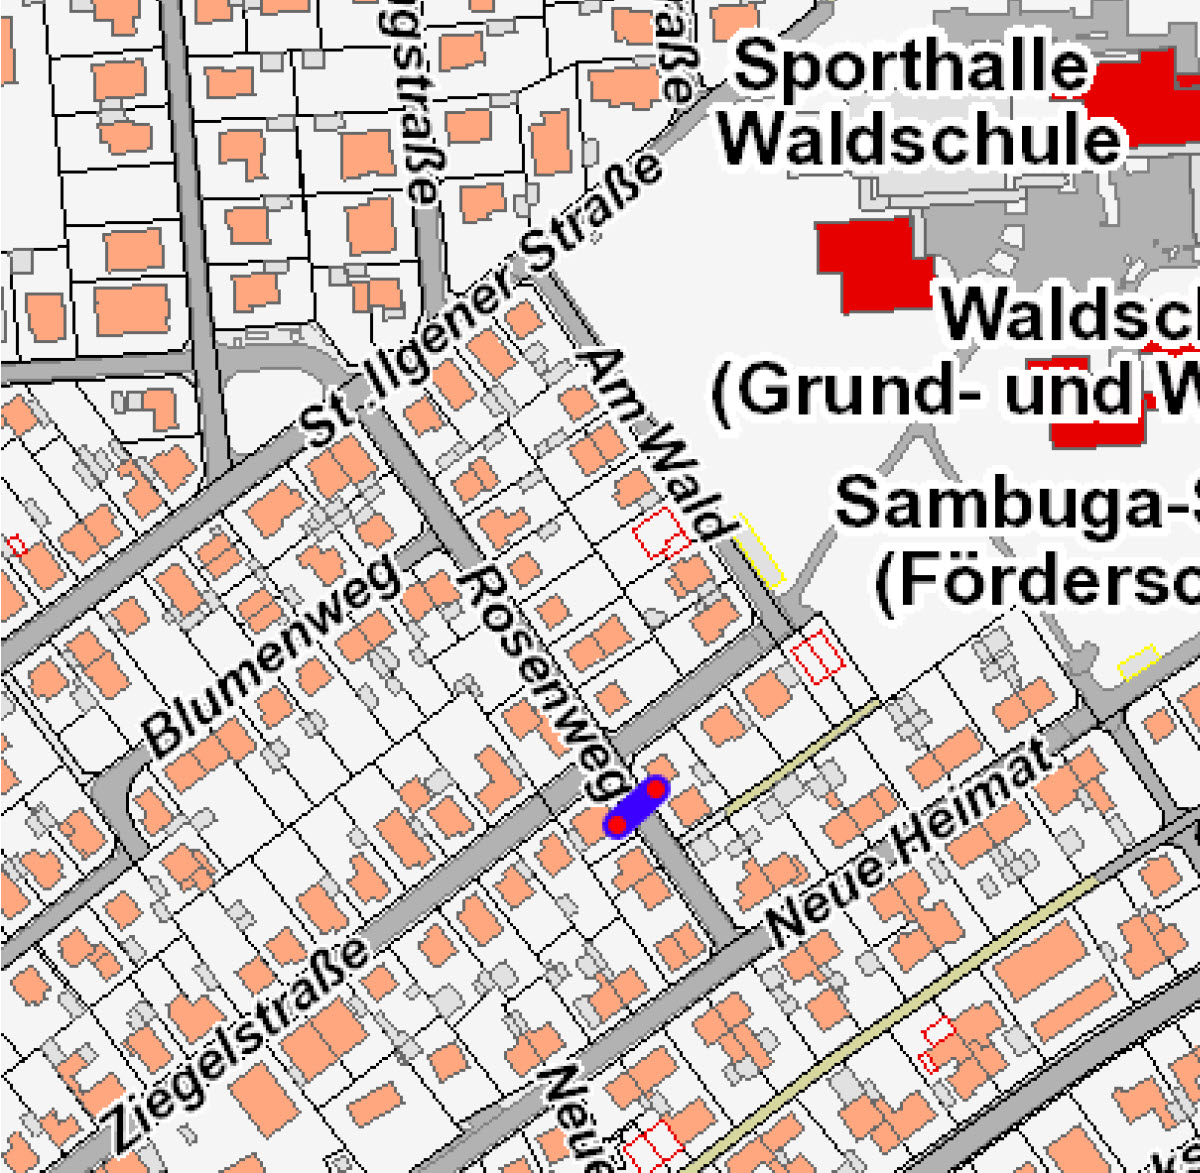 Bild aus der Antragsvorlage der Stadt Walldorf: https://www.walldorf.de/fileadmin/Rathaus/Sitzungen/10-05-2022/TOP_6_Vorlage.pdf